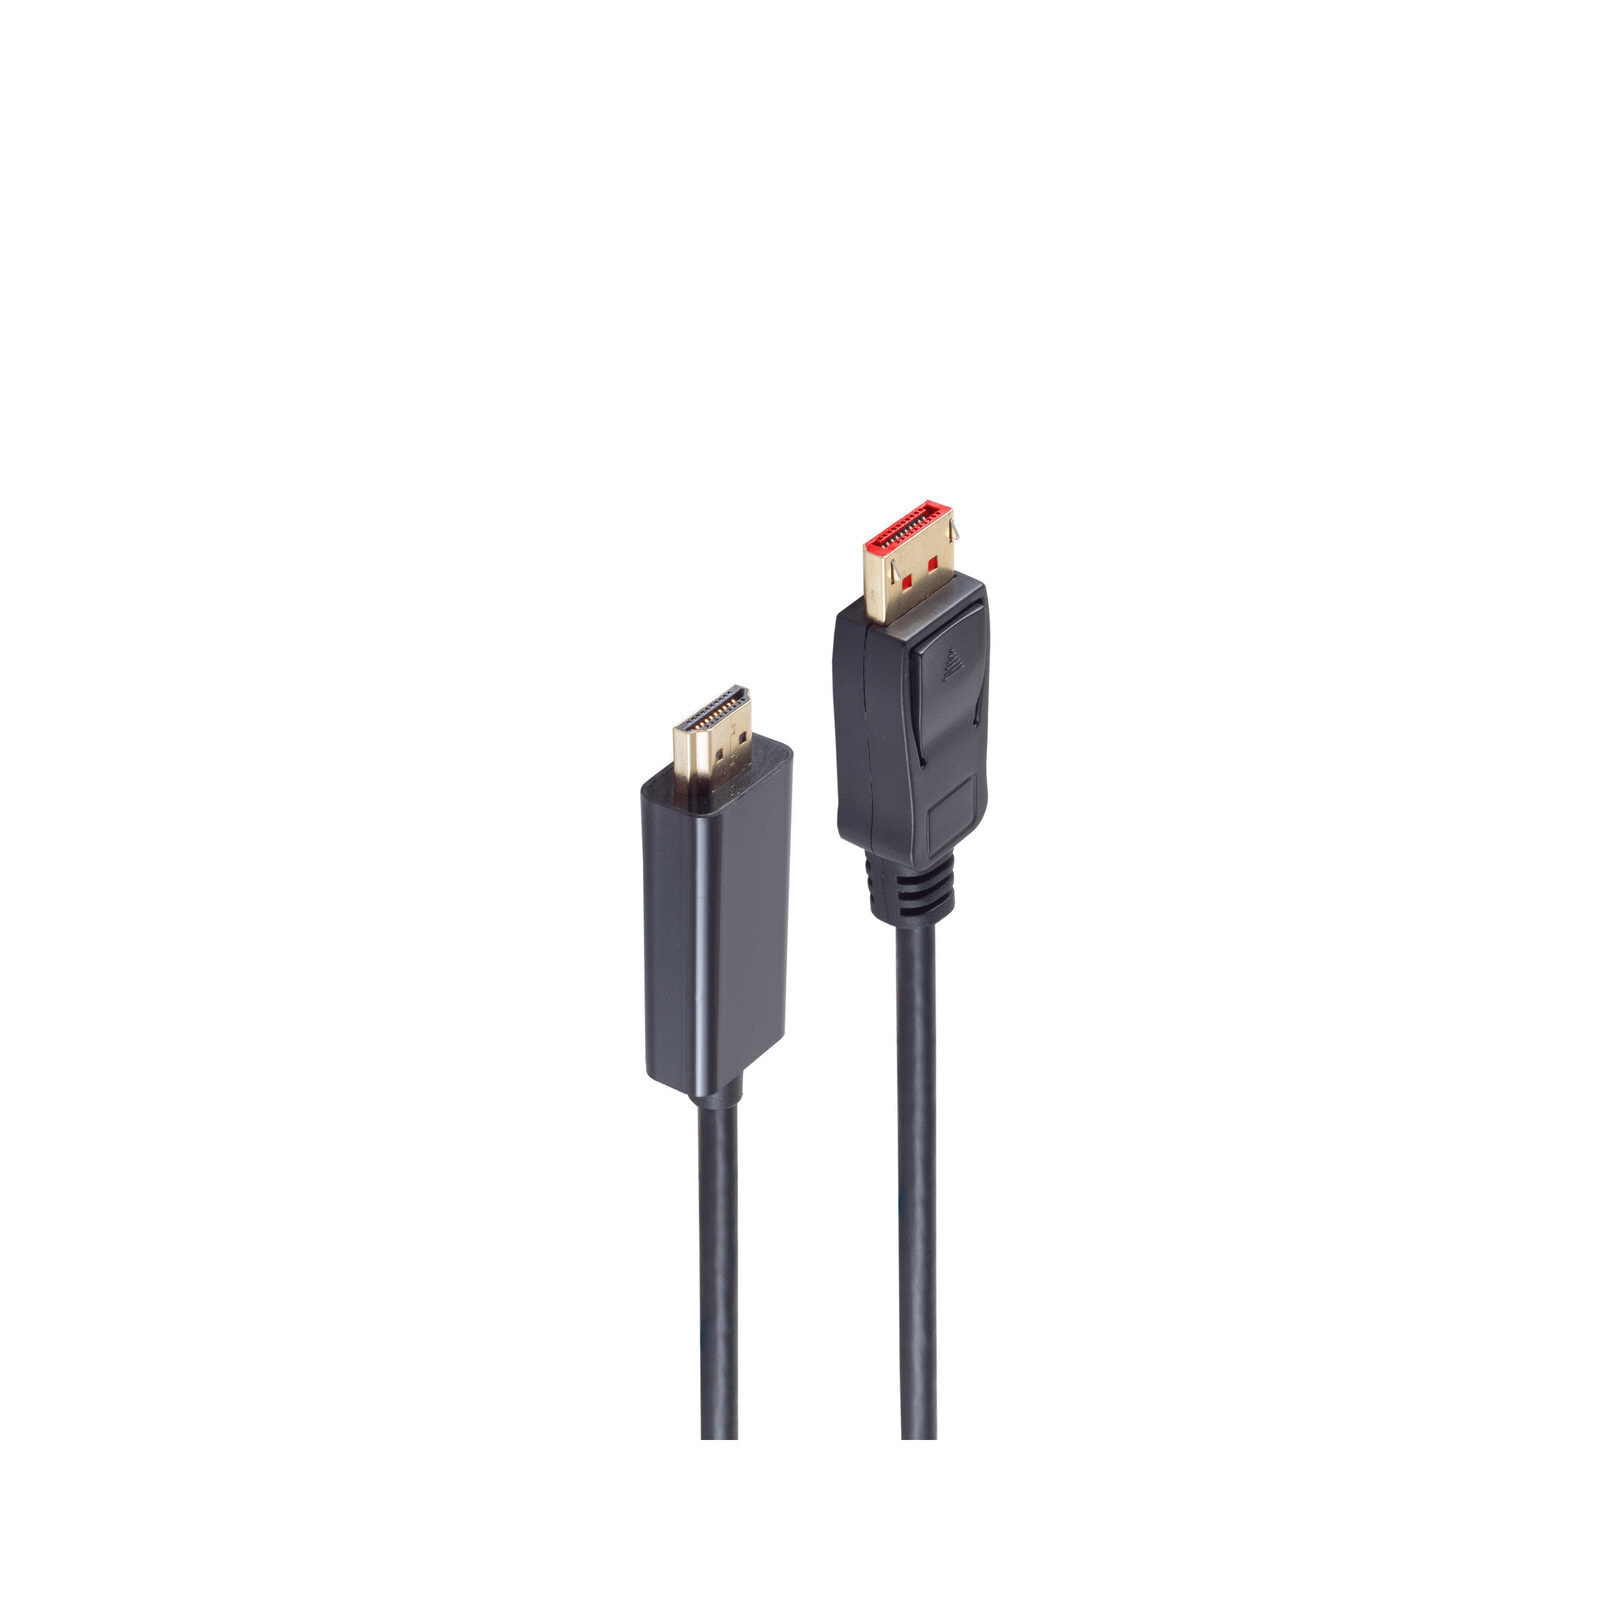 shiverpeaks BS10-71065 видео кабель адаптер 7,5 m HDMI Тип A (Стандарт) DisplayPort Черный